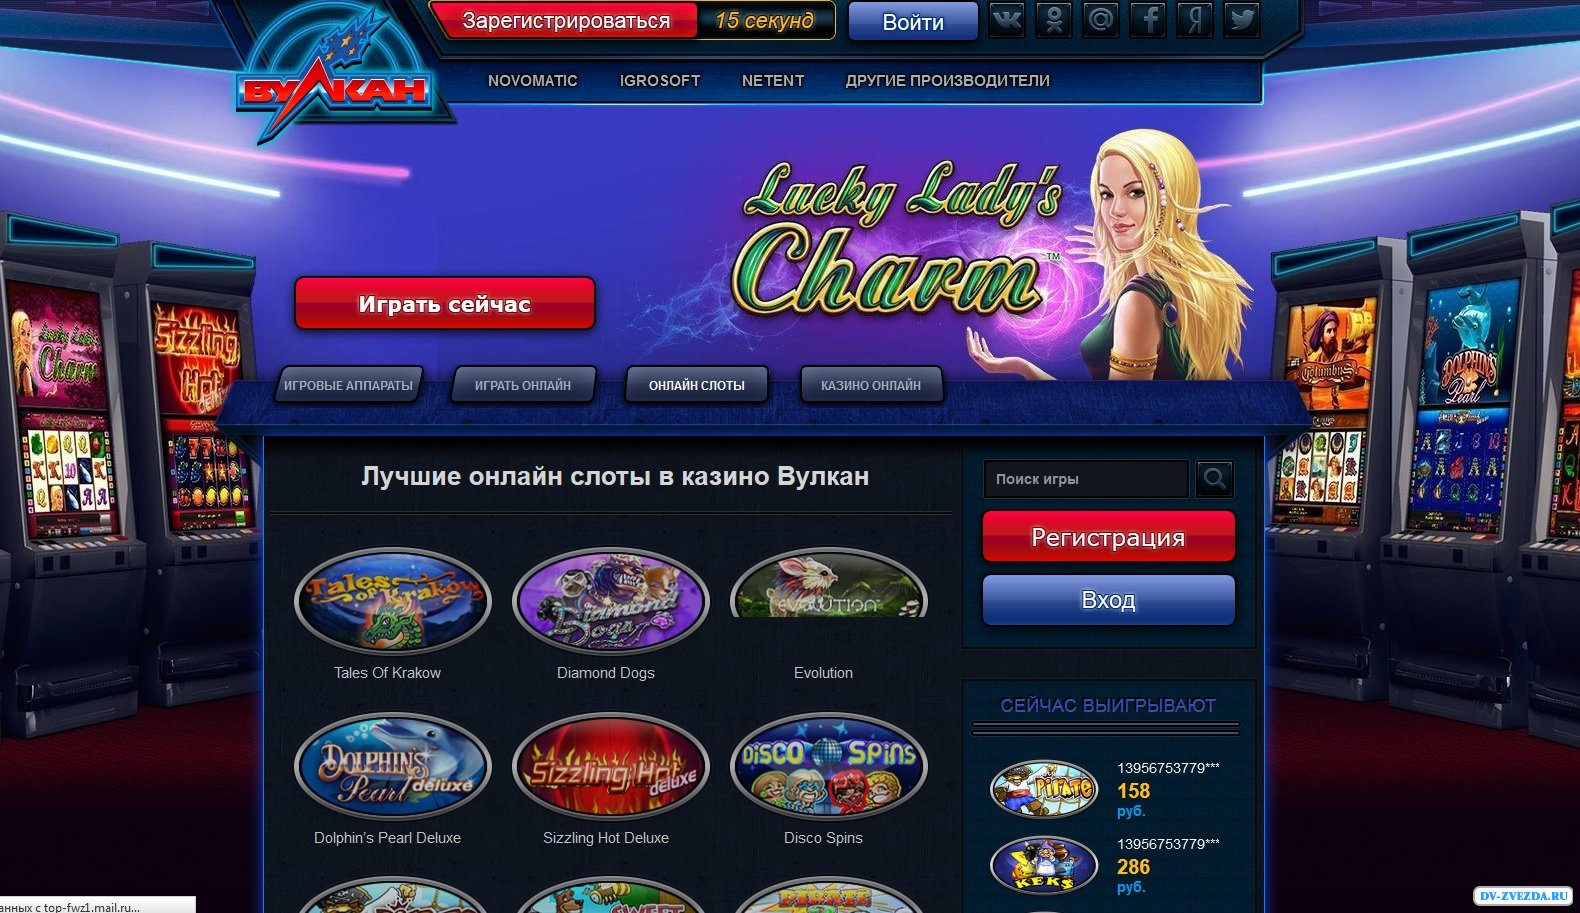 Запрещенное онлайн-казино «Вулкан» отвоевало себе 10 доменов - CNews